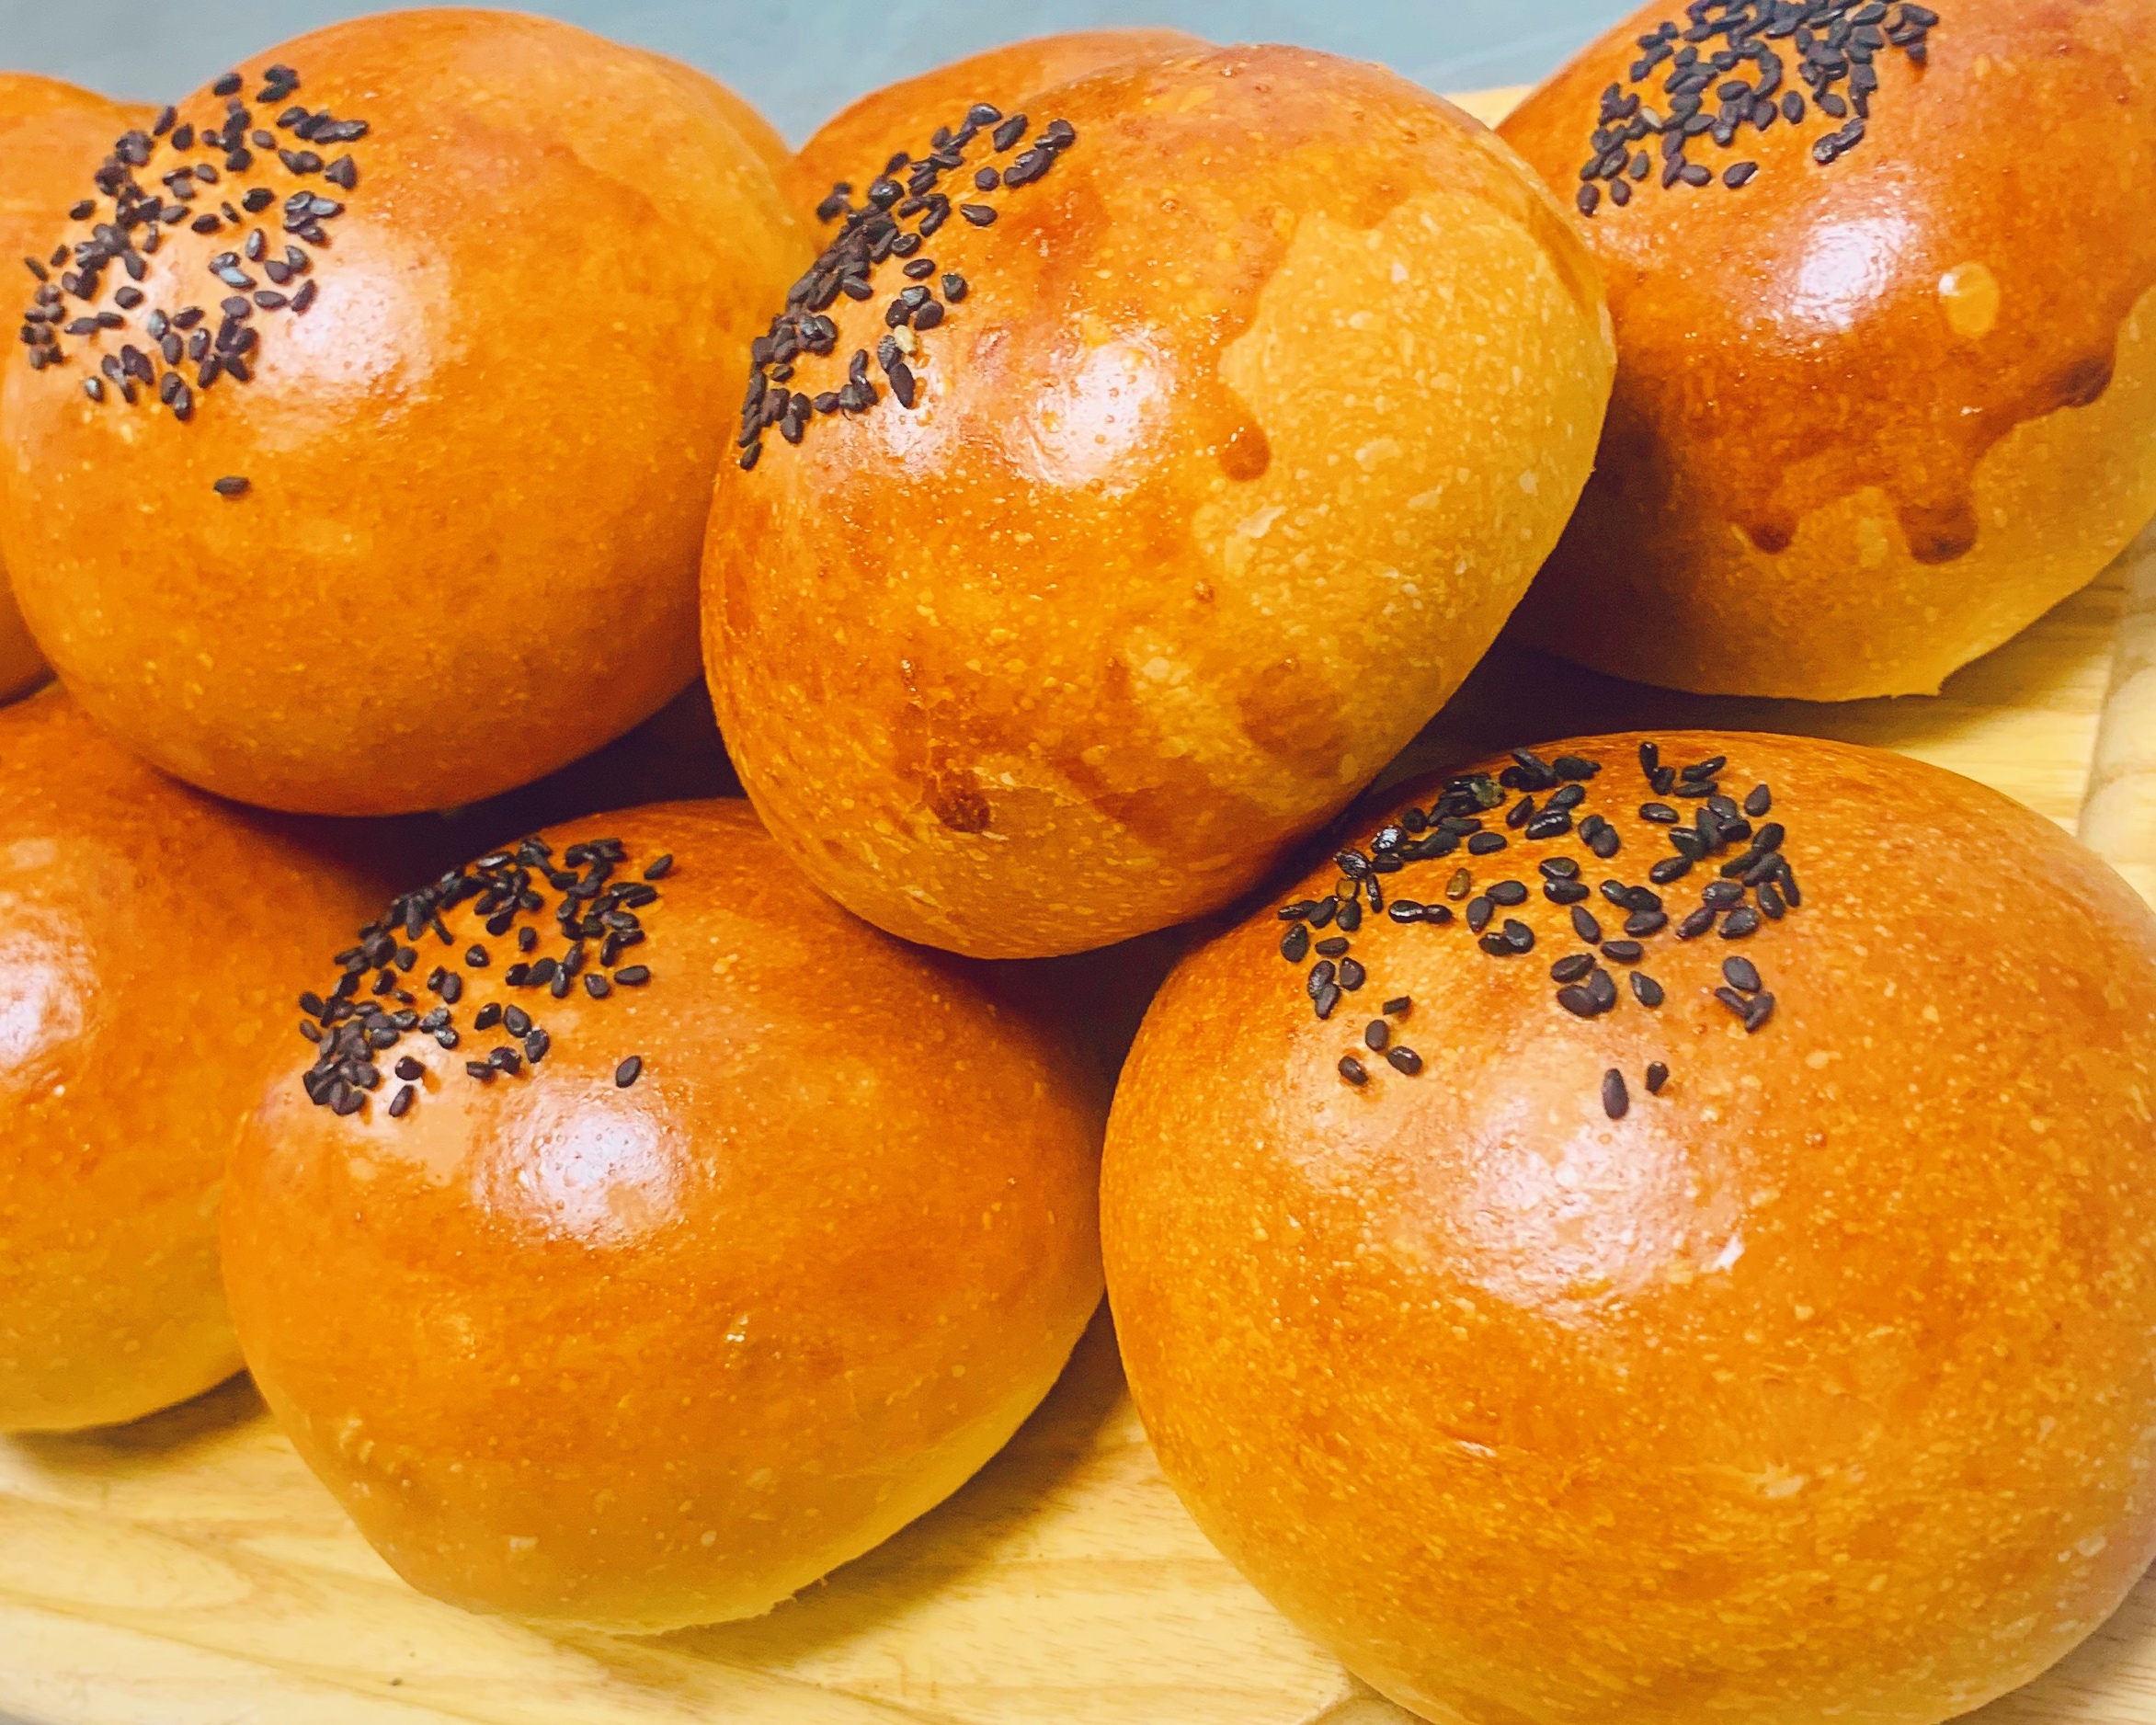 经典日式红豆面包